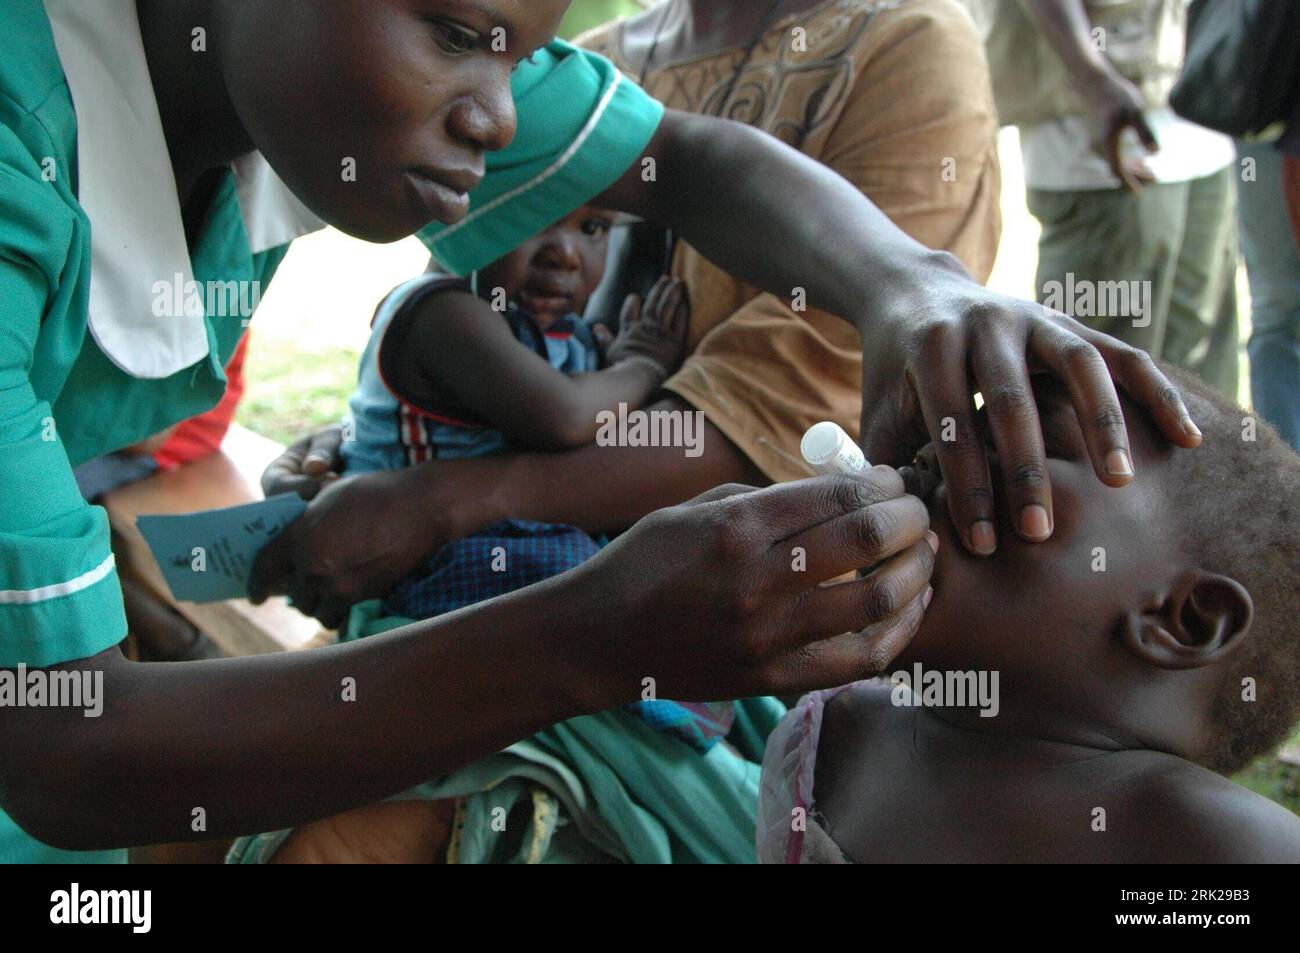 Bildnummer: 53154238  Datum: 07.06.2009  Copyright: imago/Xinhua  A health worker immunizes a child against polio vaccine in Wakiso district, 18km west of Ugandan capital Kampala on June 6, 2009. kbdig   einer Kind empfängt Tröpfchen of Polio Impfstoff Impfung, Gesundheit quer   ie    Bildnummer 53154238 Date 07 06 2009 Copyright Imago XINHUA a Health Worker Immunizer a Child against Polio Vaccine in Wakiso District 18km WEST of Ugandan Capital Kampala ON June 6 2009 Kbdig a Child receives Droplets of Polio Vaccine Vaccination Health horizontal ie Stock Photo